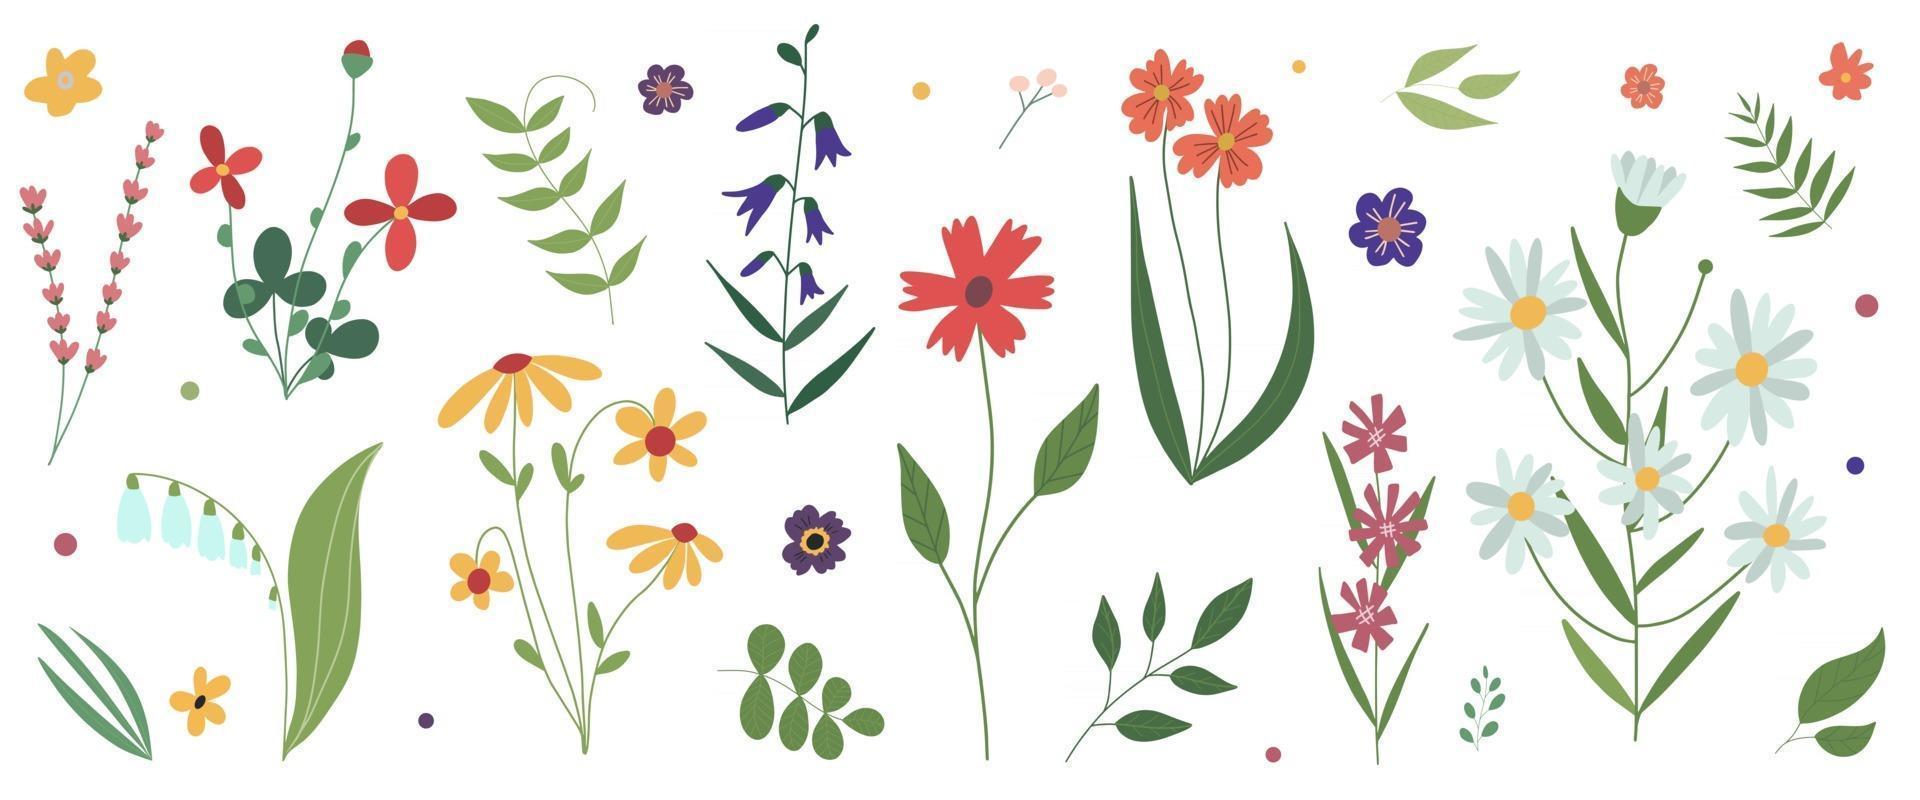 coleção de flores de prado selvagem florescendo plana colorida ilustração vetorial botânica flores isoladas em um fundo branco conjunto de elementos decorativos de design floral vetor